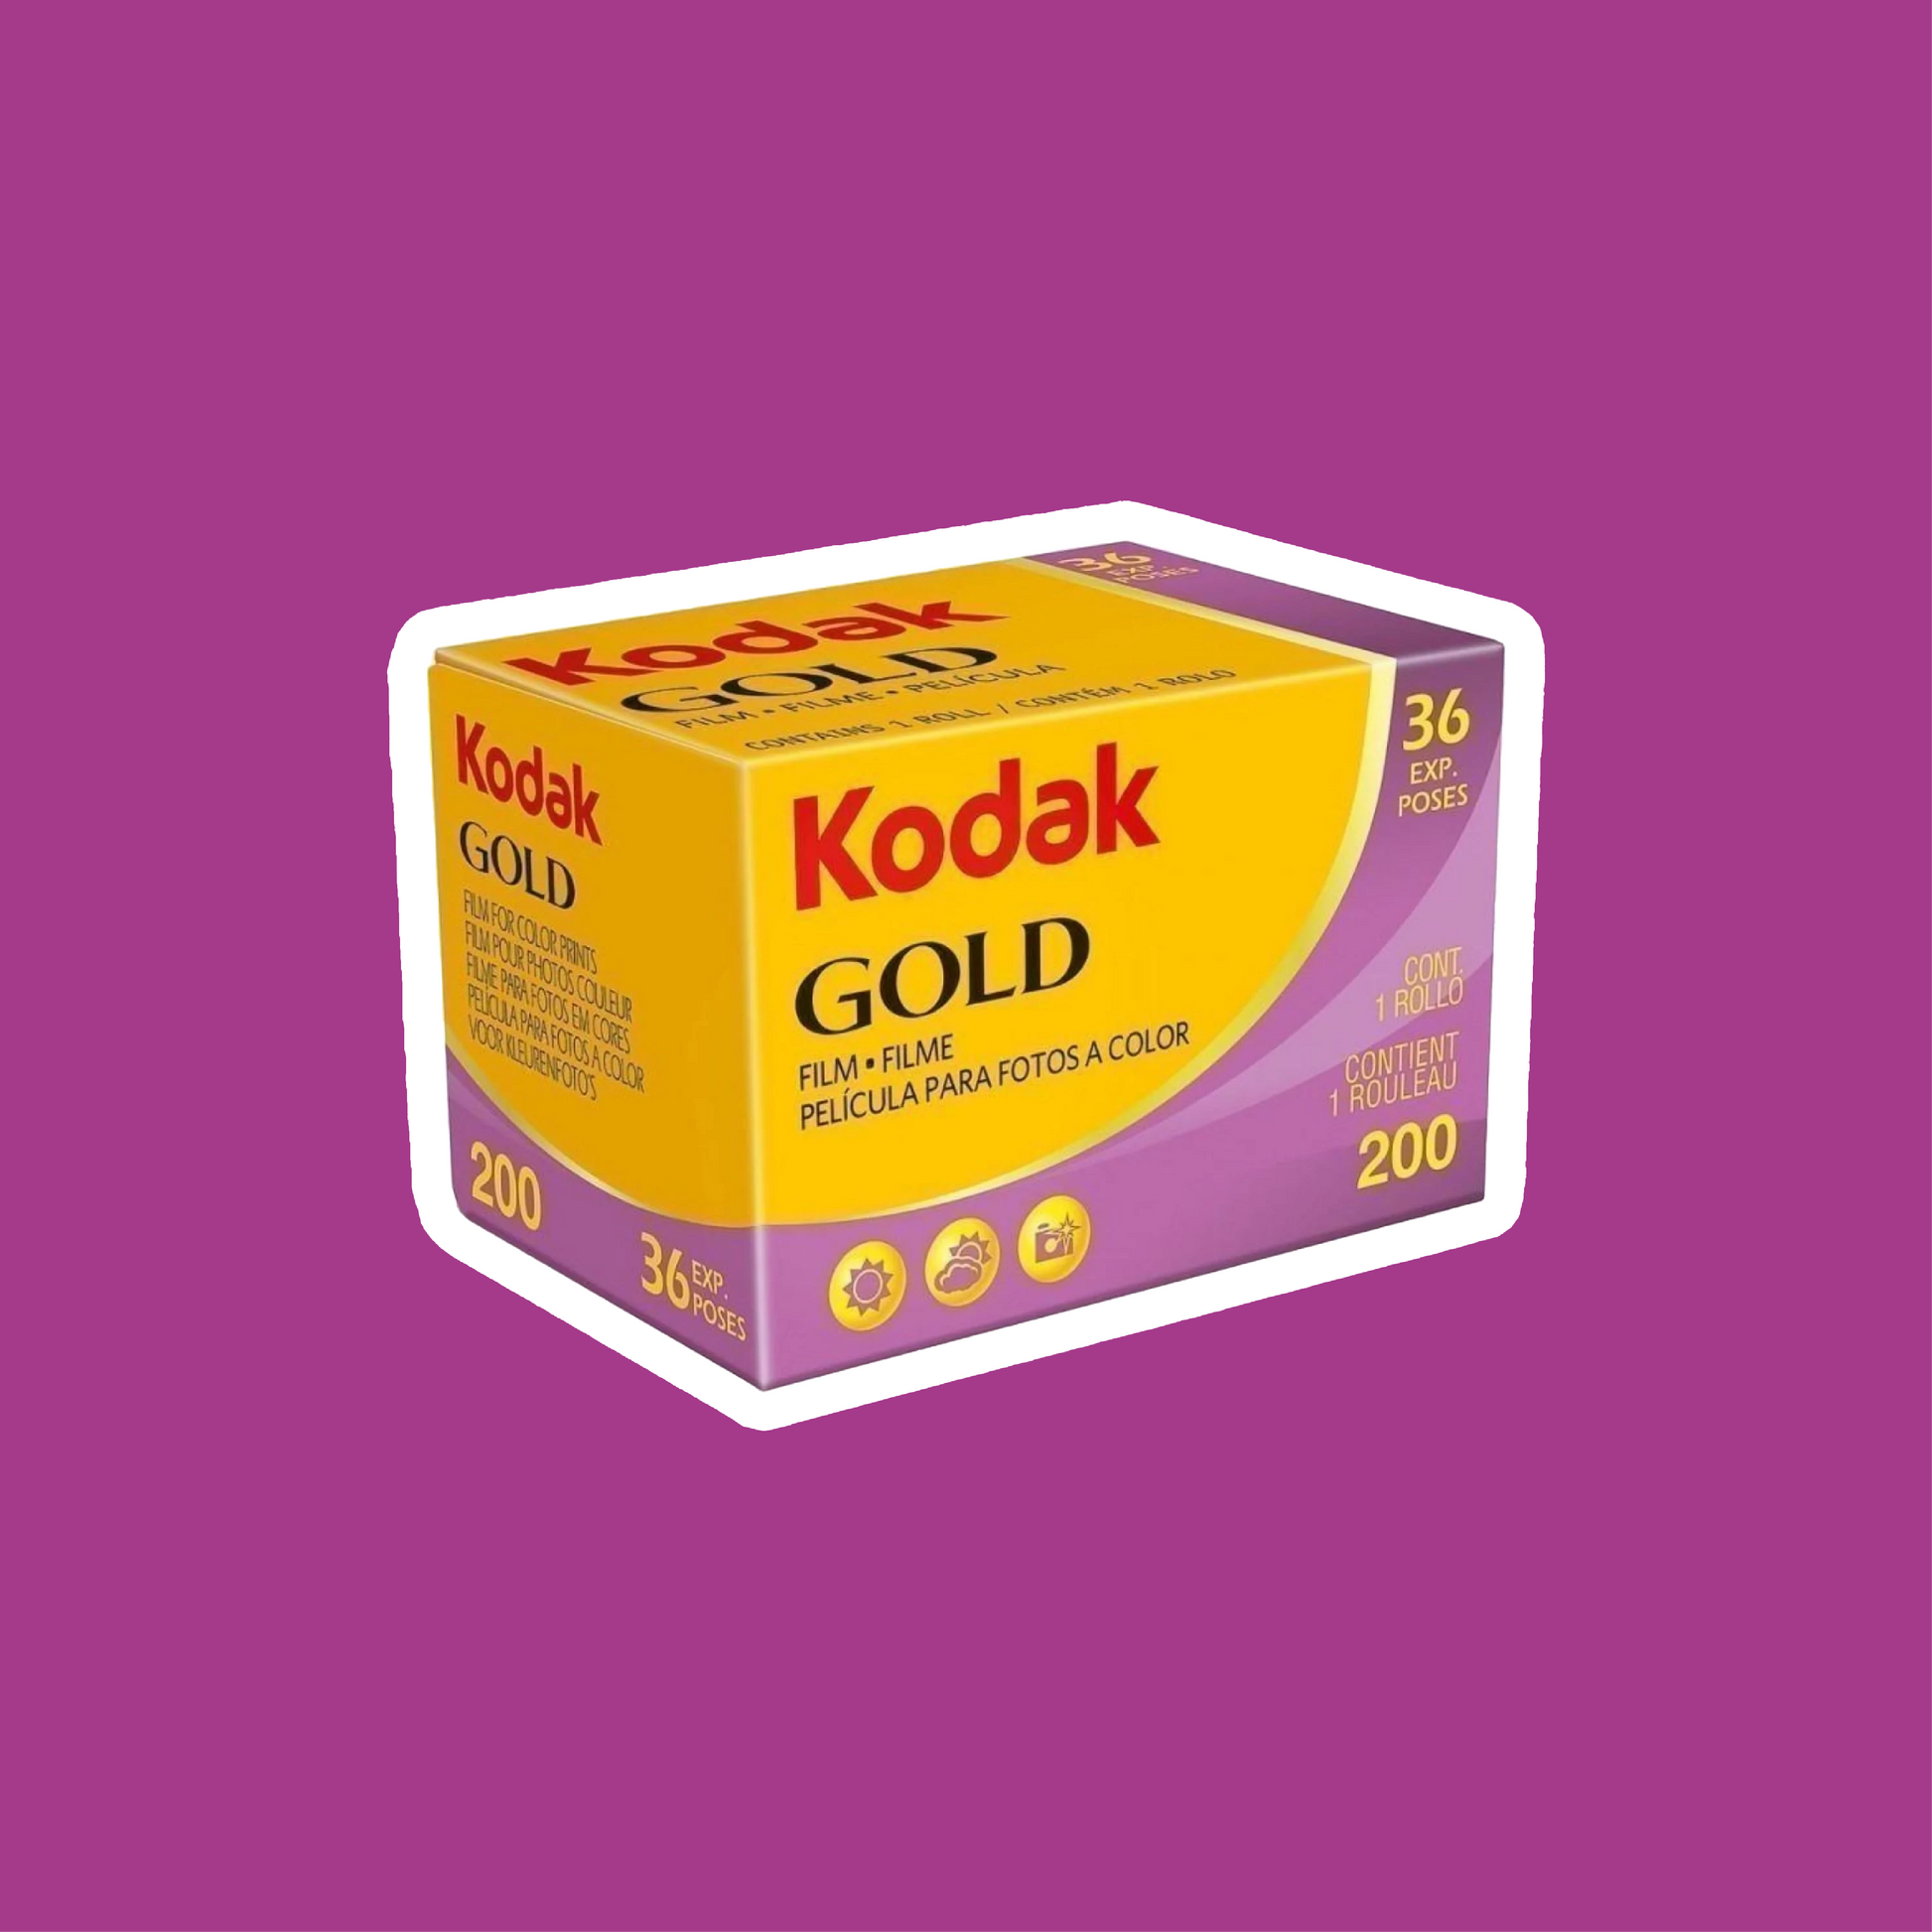 【未使用保管品】カメラフィルム Kodak GOLD 100 36枚撮 20本期限切れです